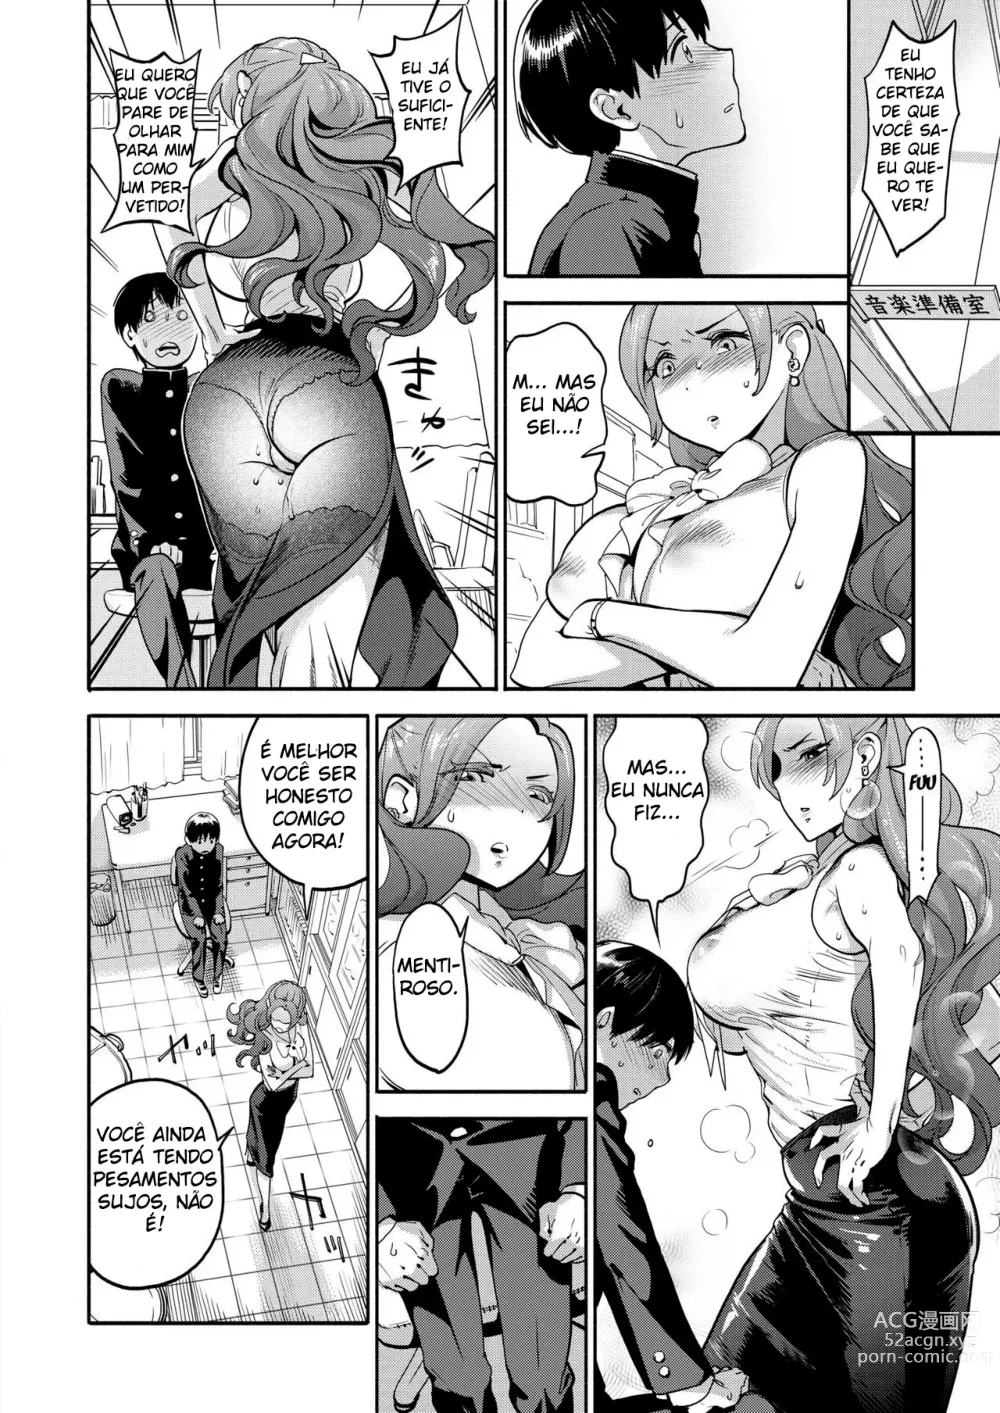 Page 13 of manga The Female Teacher's Secret NTR Fetish